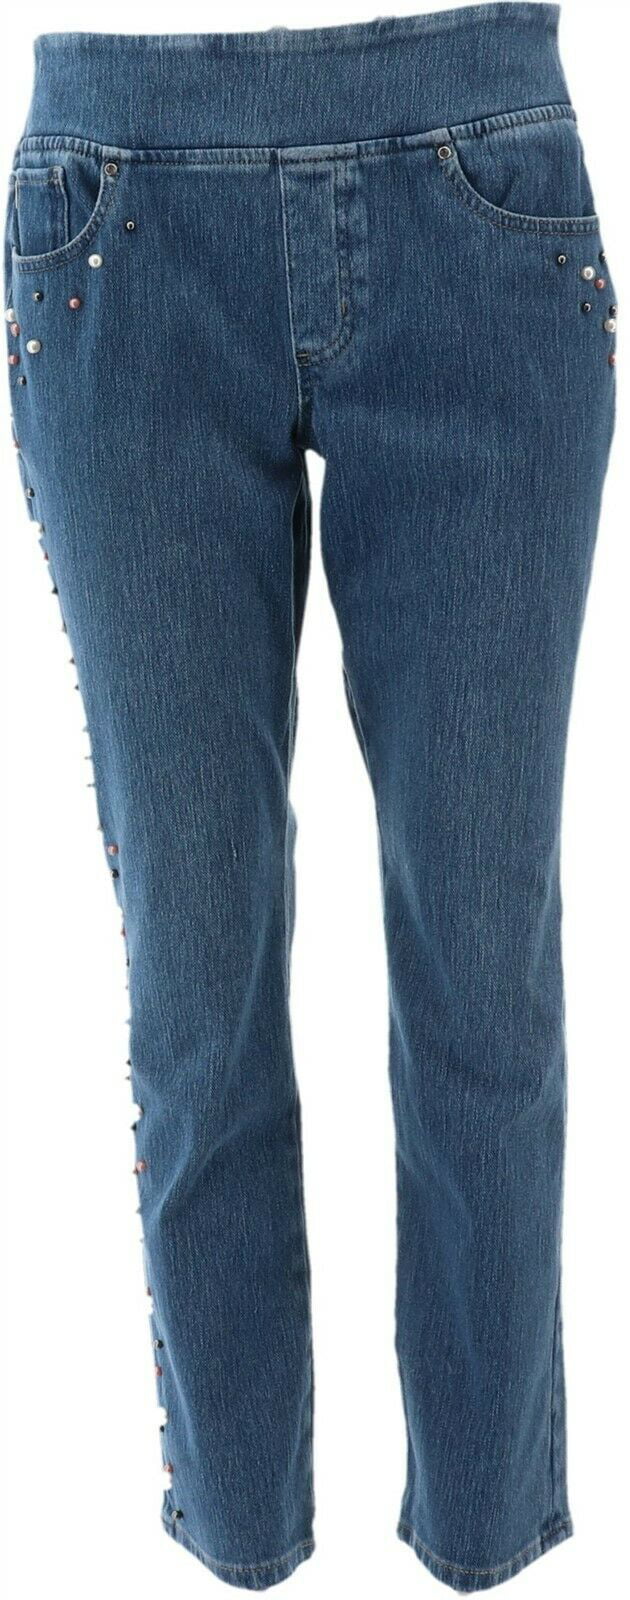 Belle Kim Gravel Flexibelle Slim Leg Jeans Petite Women's A309999 ...